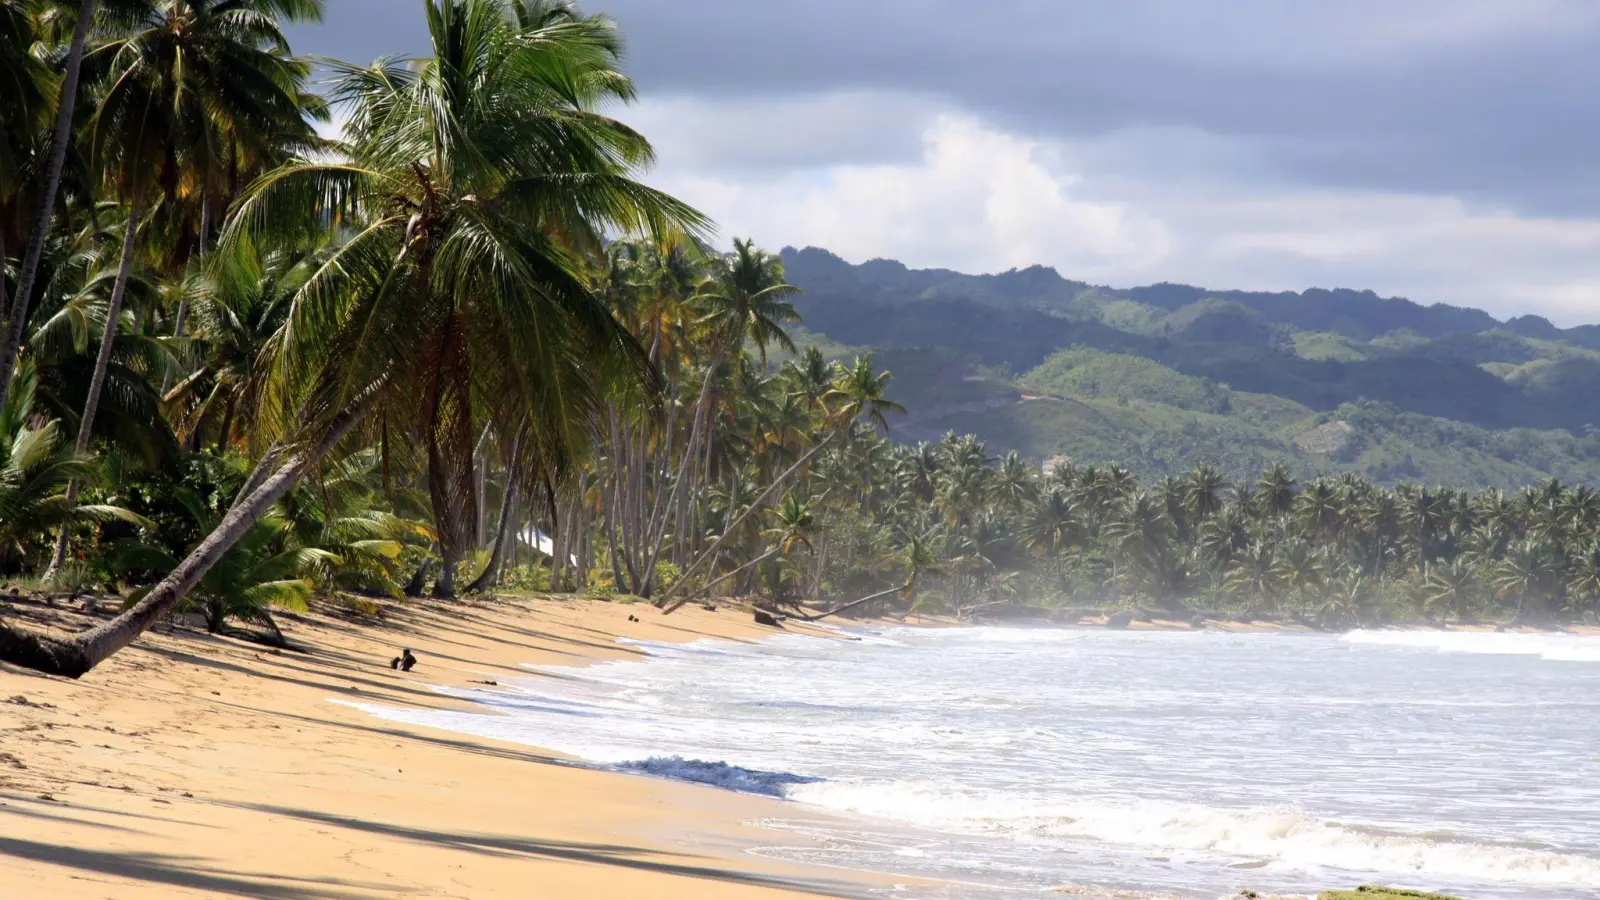 Der kalten Jahreszeit in die Karibik entfliehen? Wer für kommenden Winter eine Pauschalreise in die Dominikanische Republik plant, darf auf leicht sinkende Preise hoffen. (Foto: Manuel Meyer/dpa-tmn)